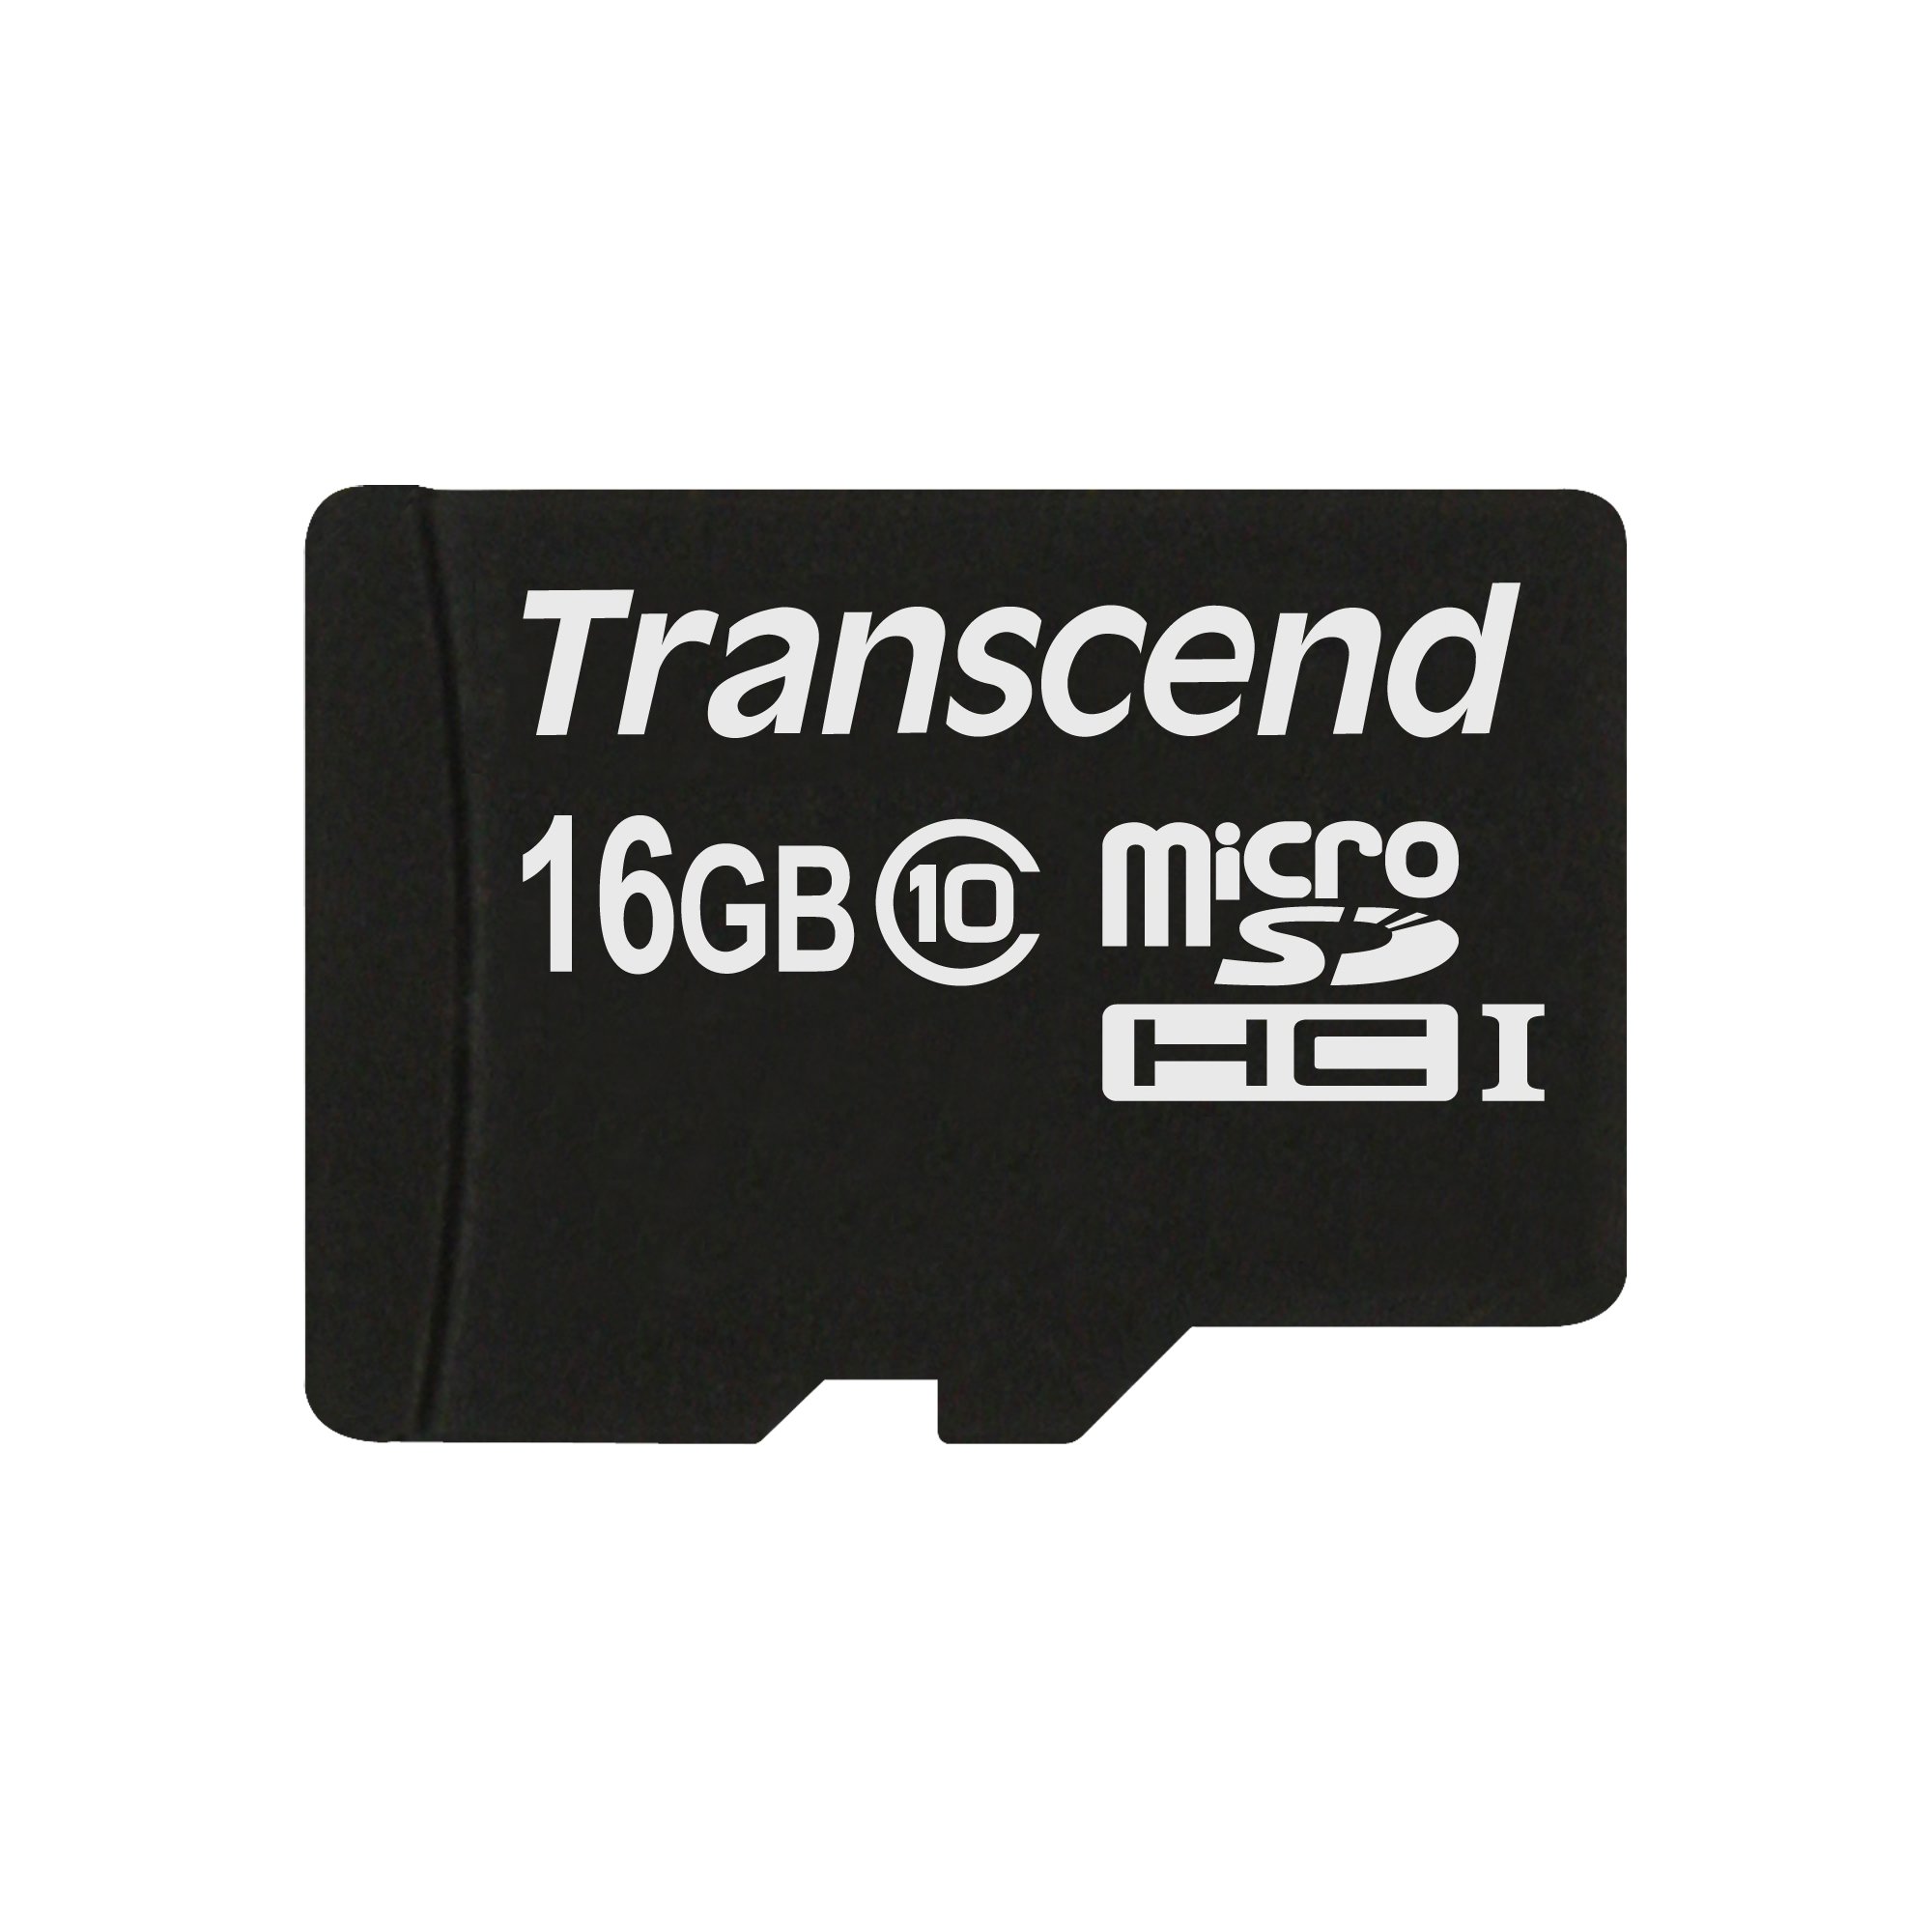 16GB MICROSDXC/SDHC CLASS 10